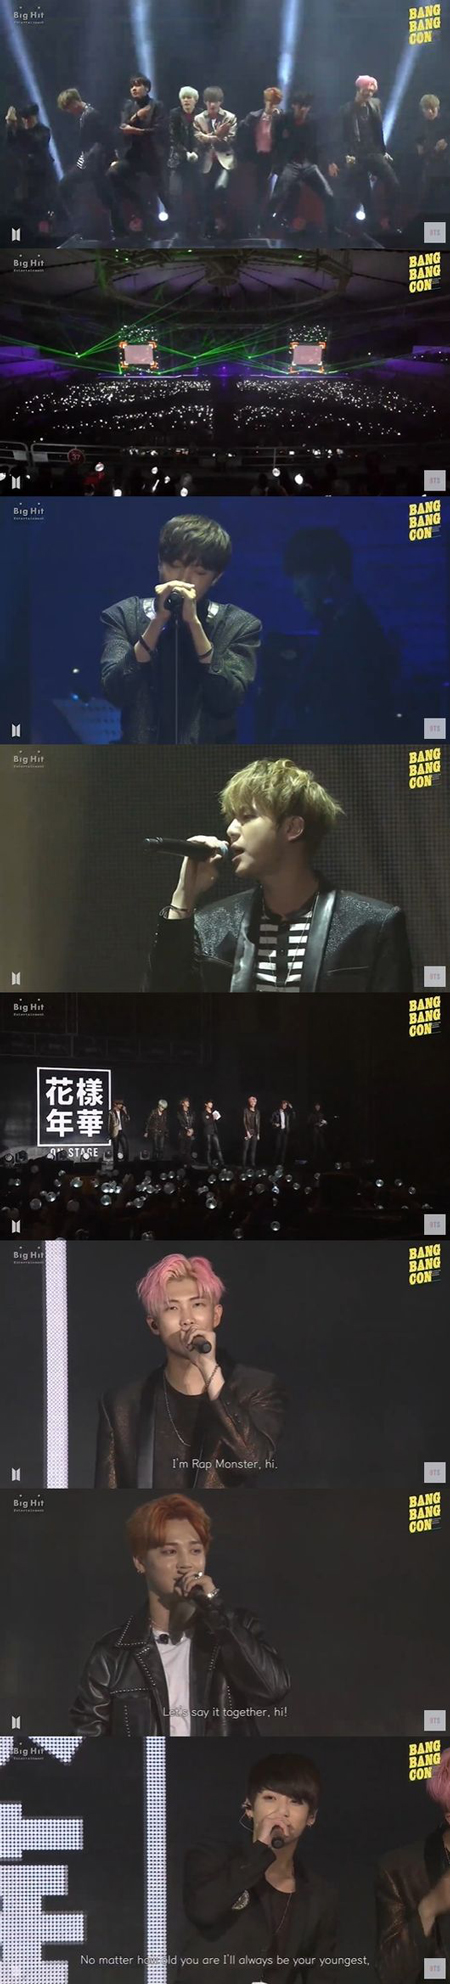 「BTS（防弾少年団）」、部屋で楽しむアンコンタクト公演「BANGBANGCON」が視聴者200万人超え